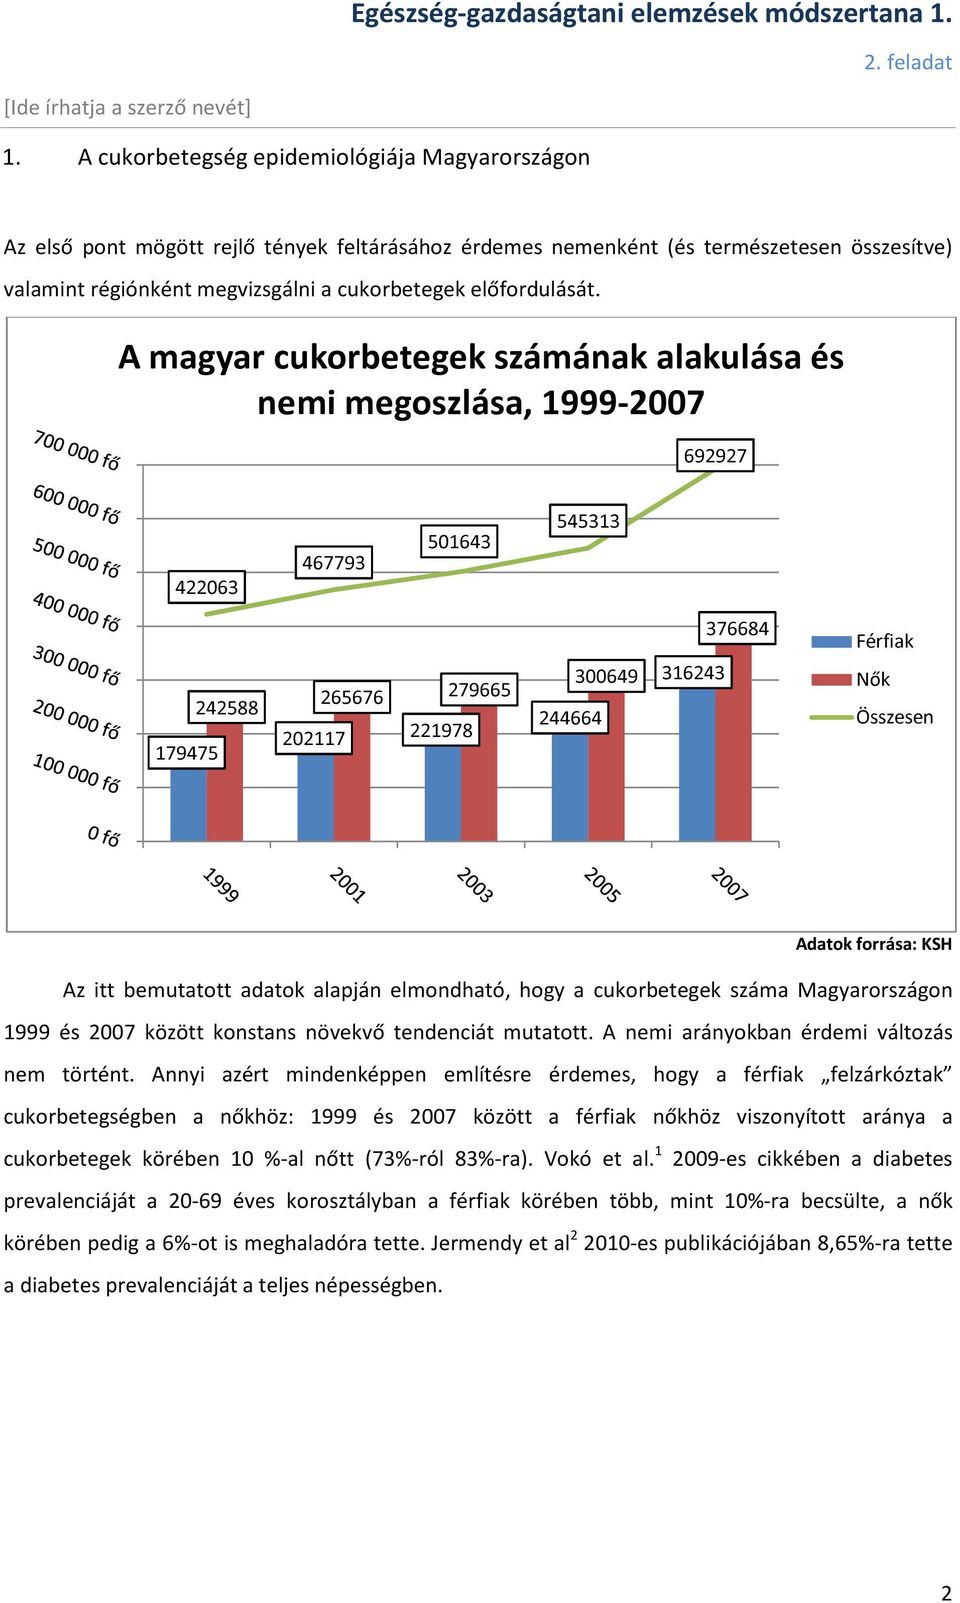 cukorbetegség gyakorisága magyarországon